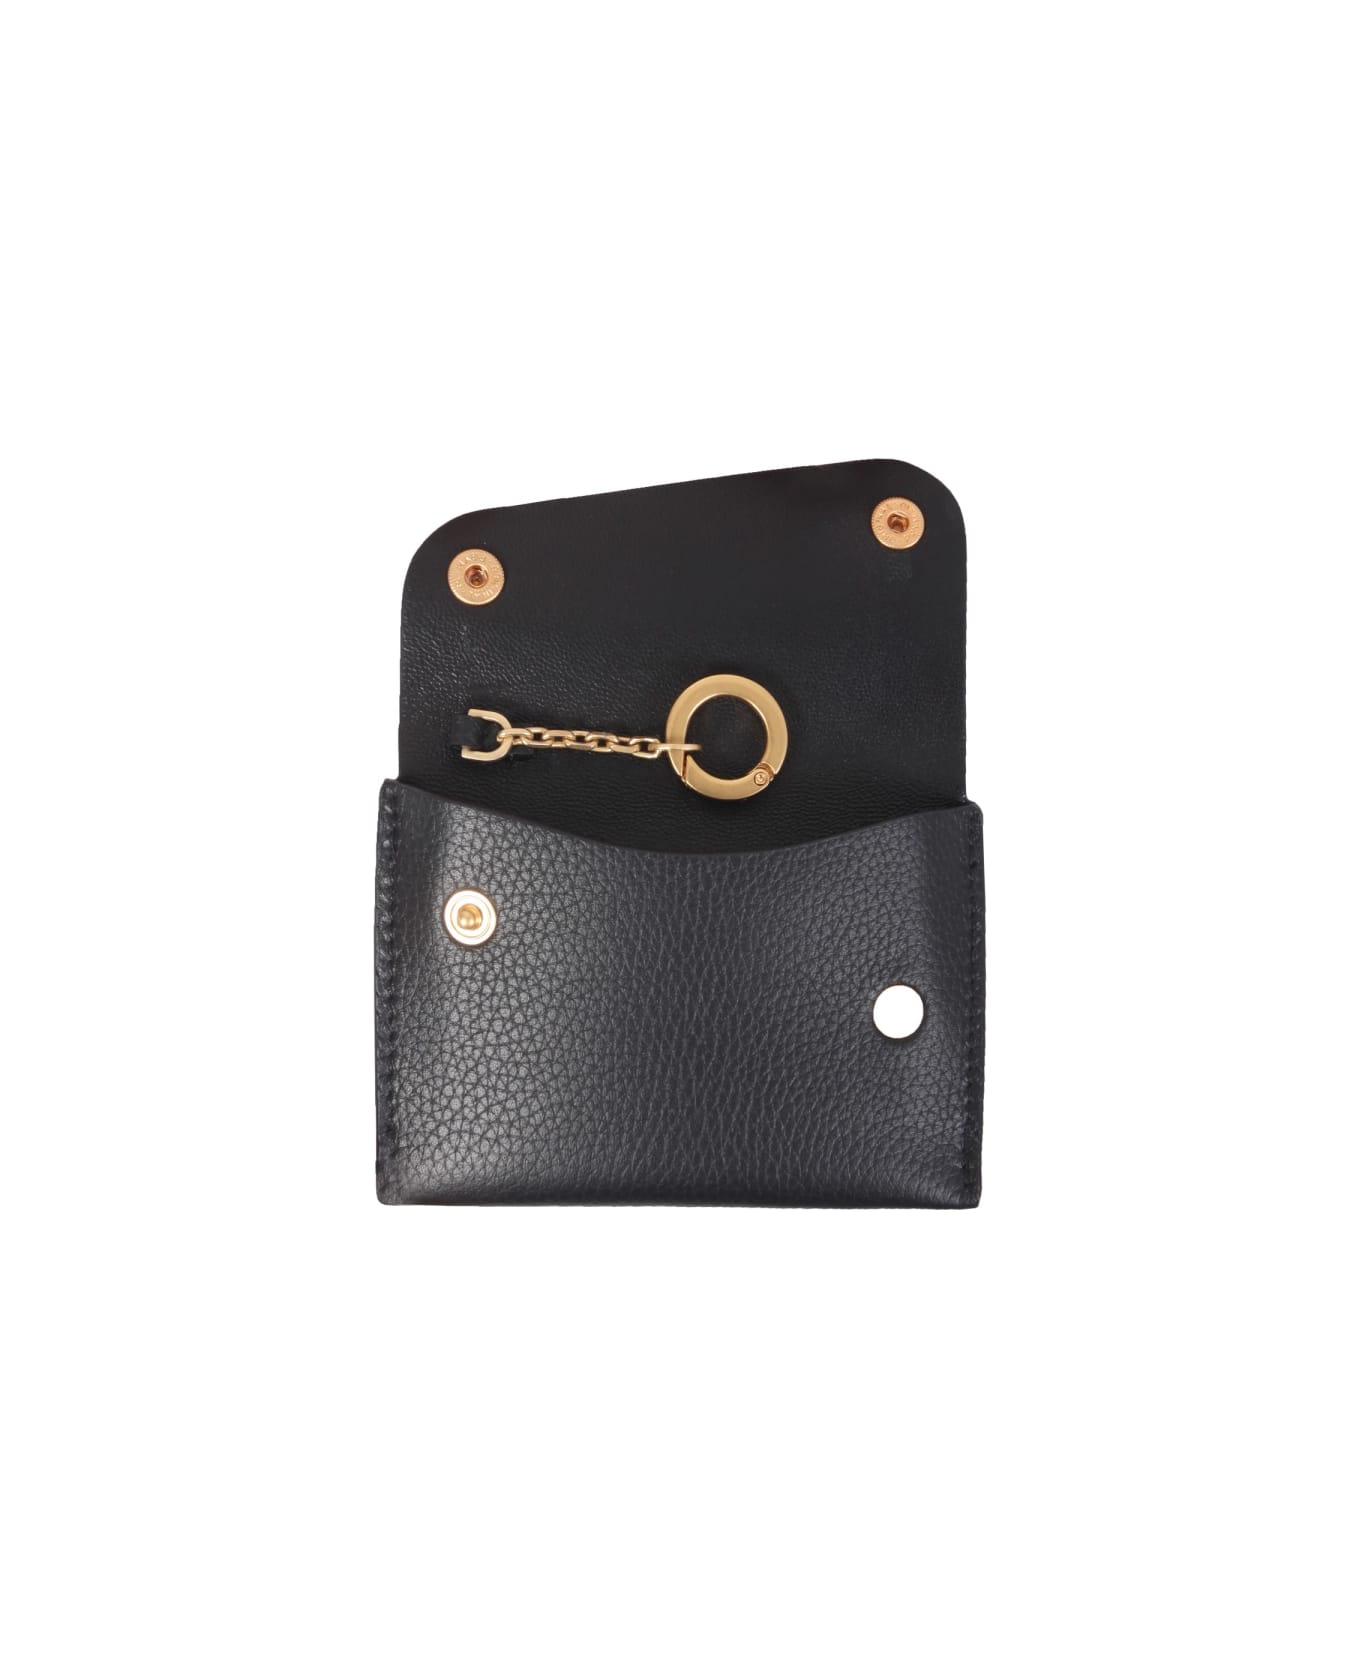 Il Bisonte European Leather Card Holder - BLACK